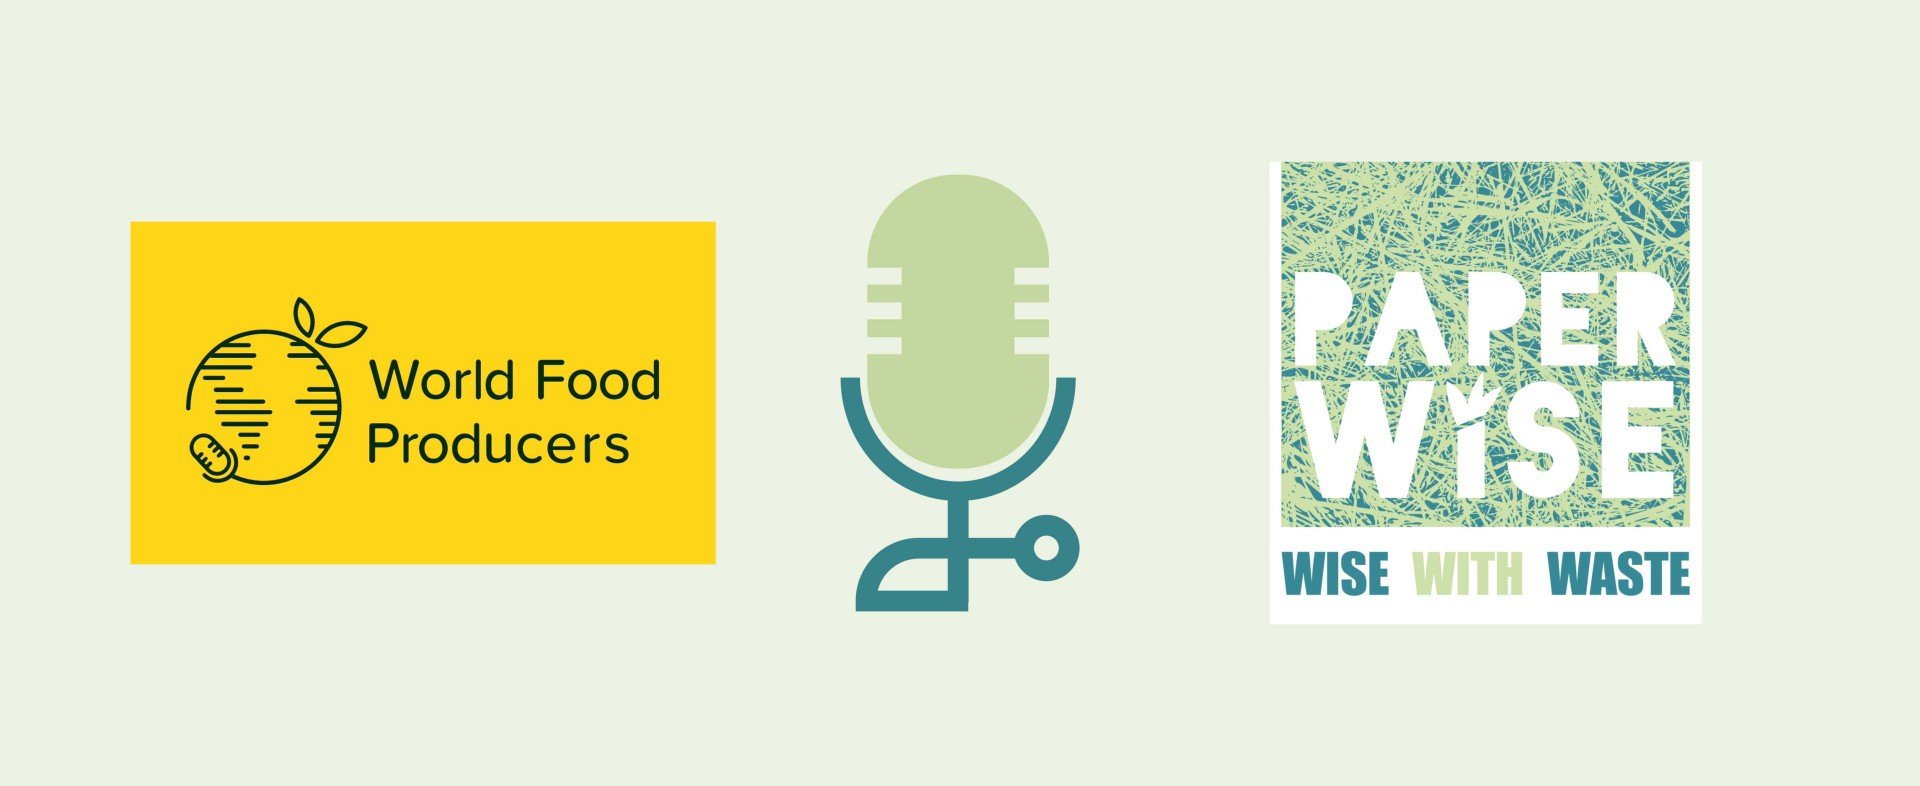 World Food Producers s’entretient avec le fondateur de PaperWise, Peter van Rosmalen